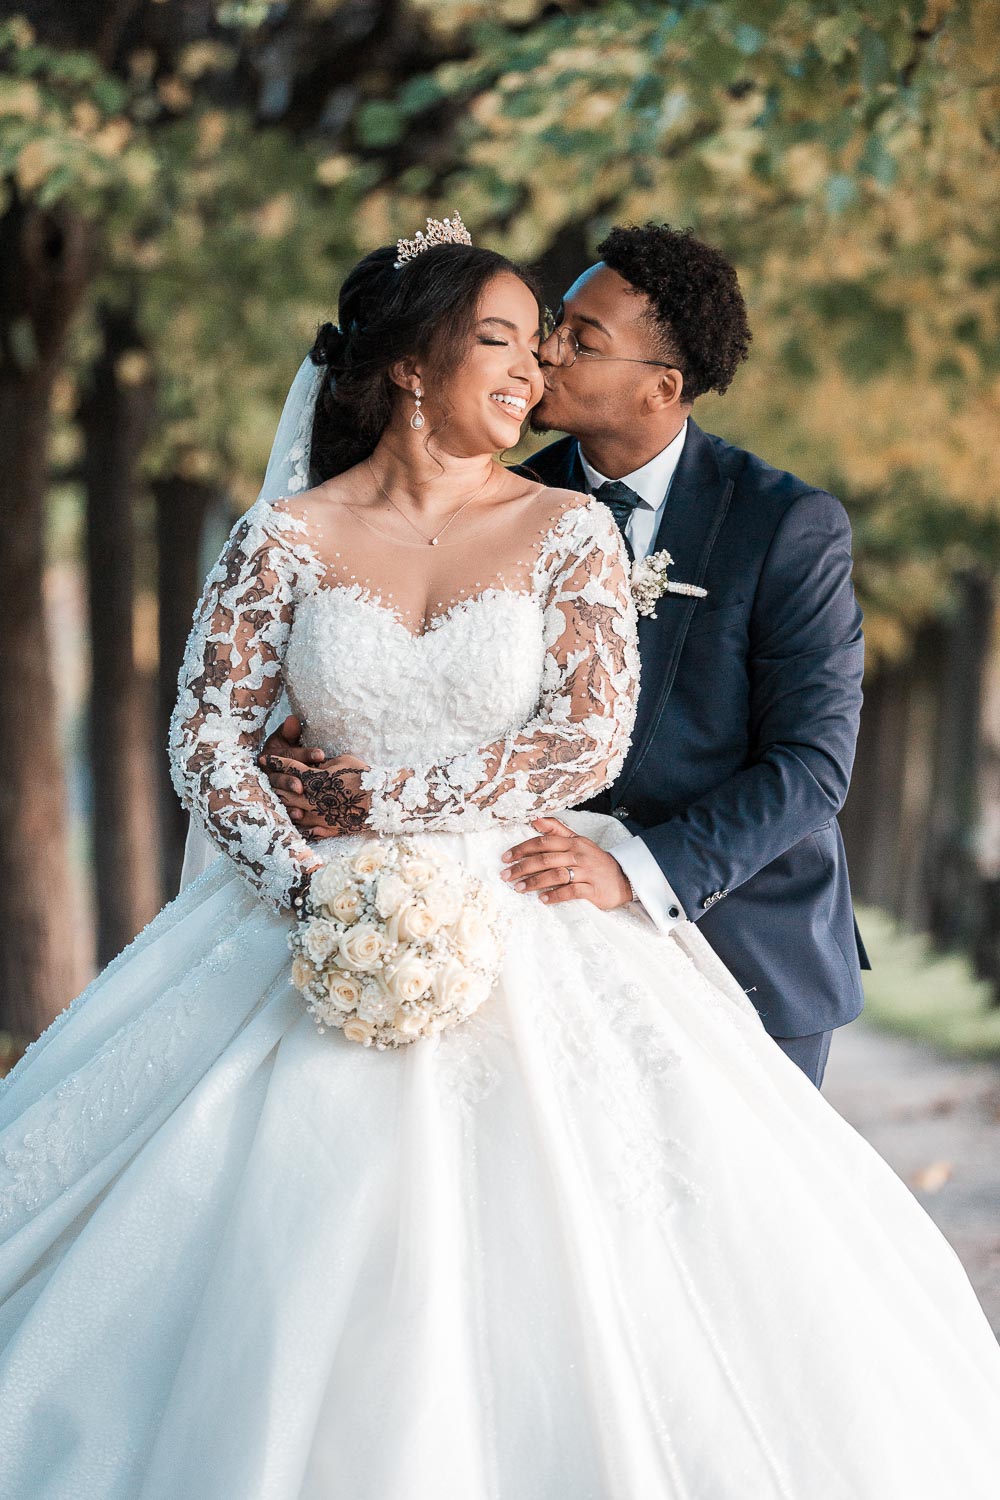 Der Bräutigam umarmt die Braut von hinten in der Allee und küsst sie auf die Wange, während sie lächelt. Das Hochzeitsfoto ist im amerikanischen Stil angeschnitten.